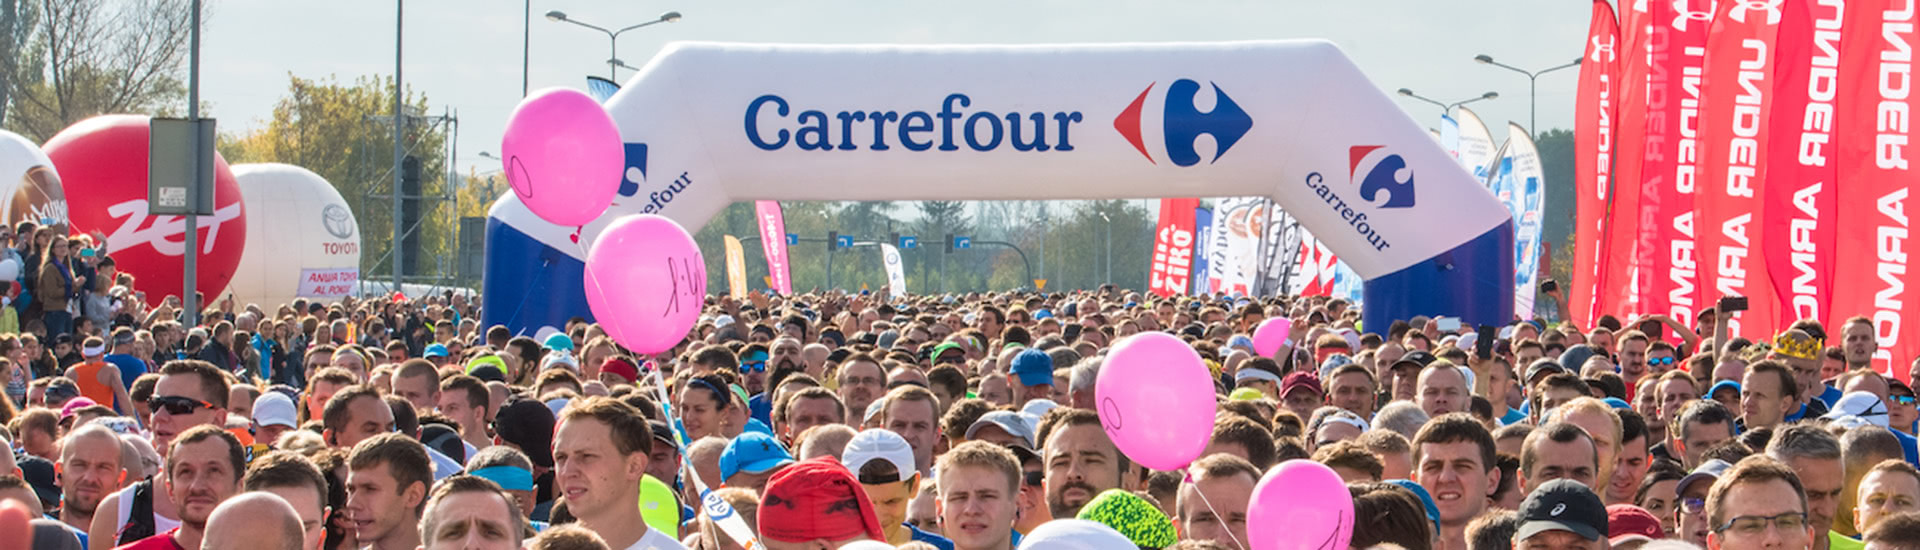 Carrefour w Krakowie zakończył sezon biegowy 2017